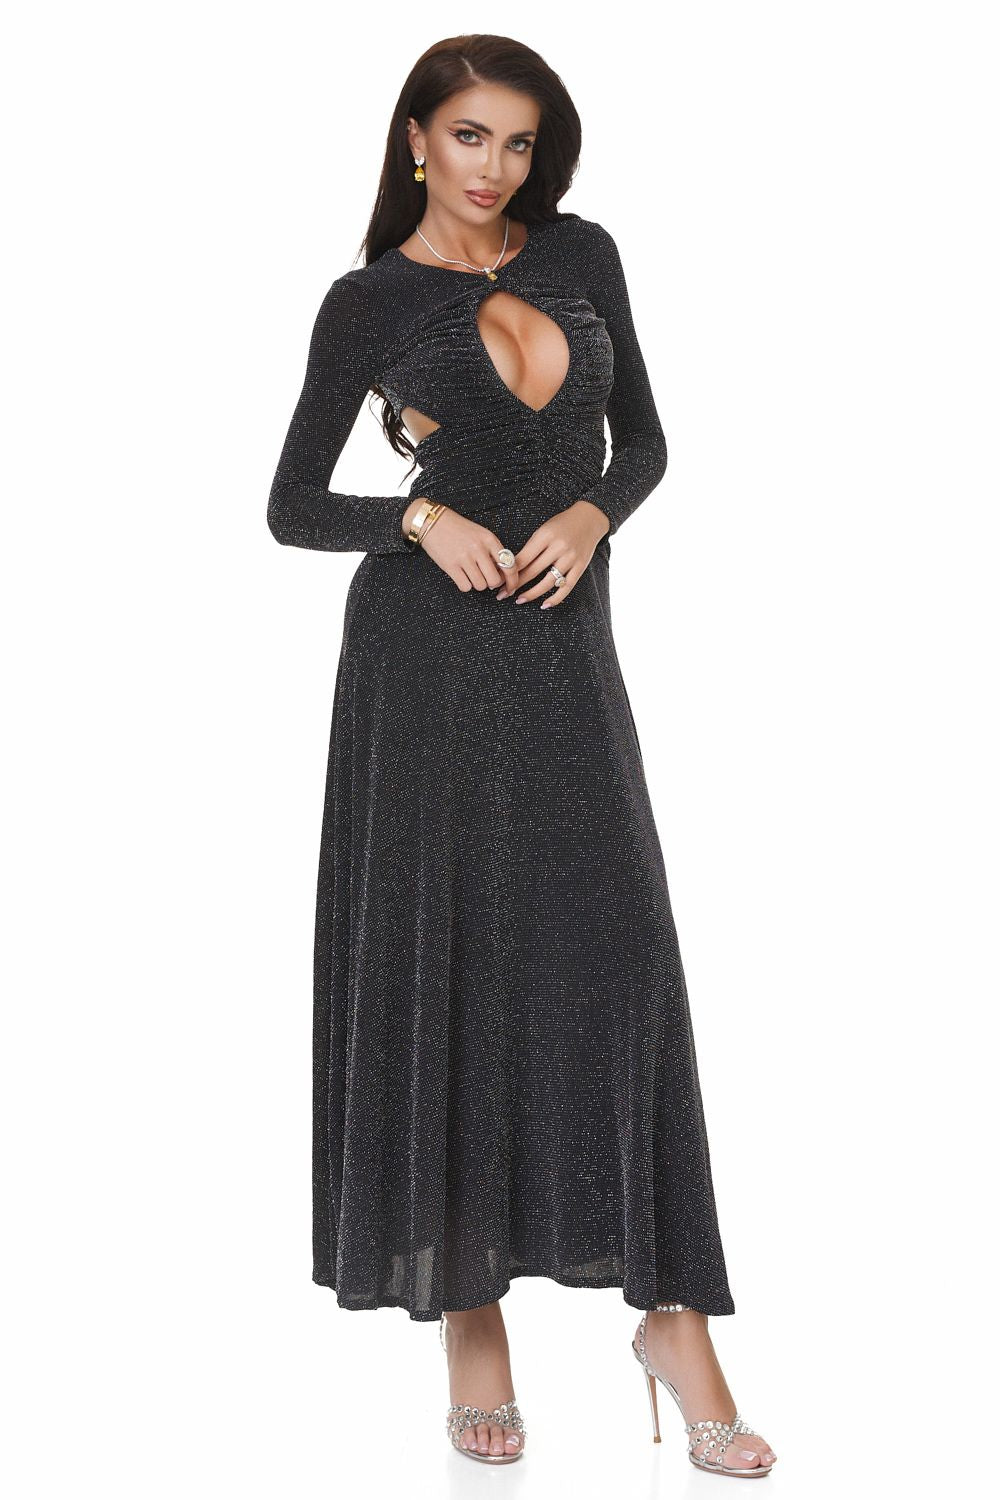 Дамска дълга черна рокля Lerisy Bogas